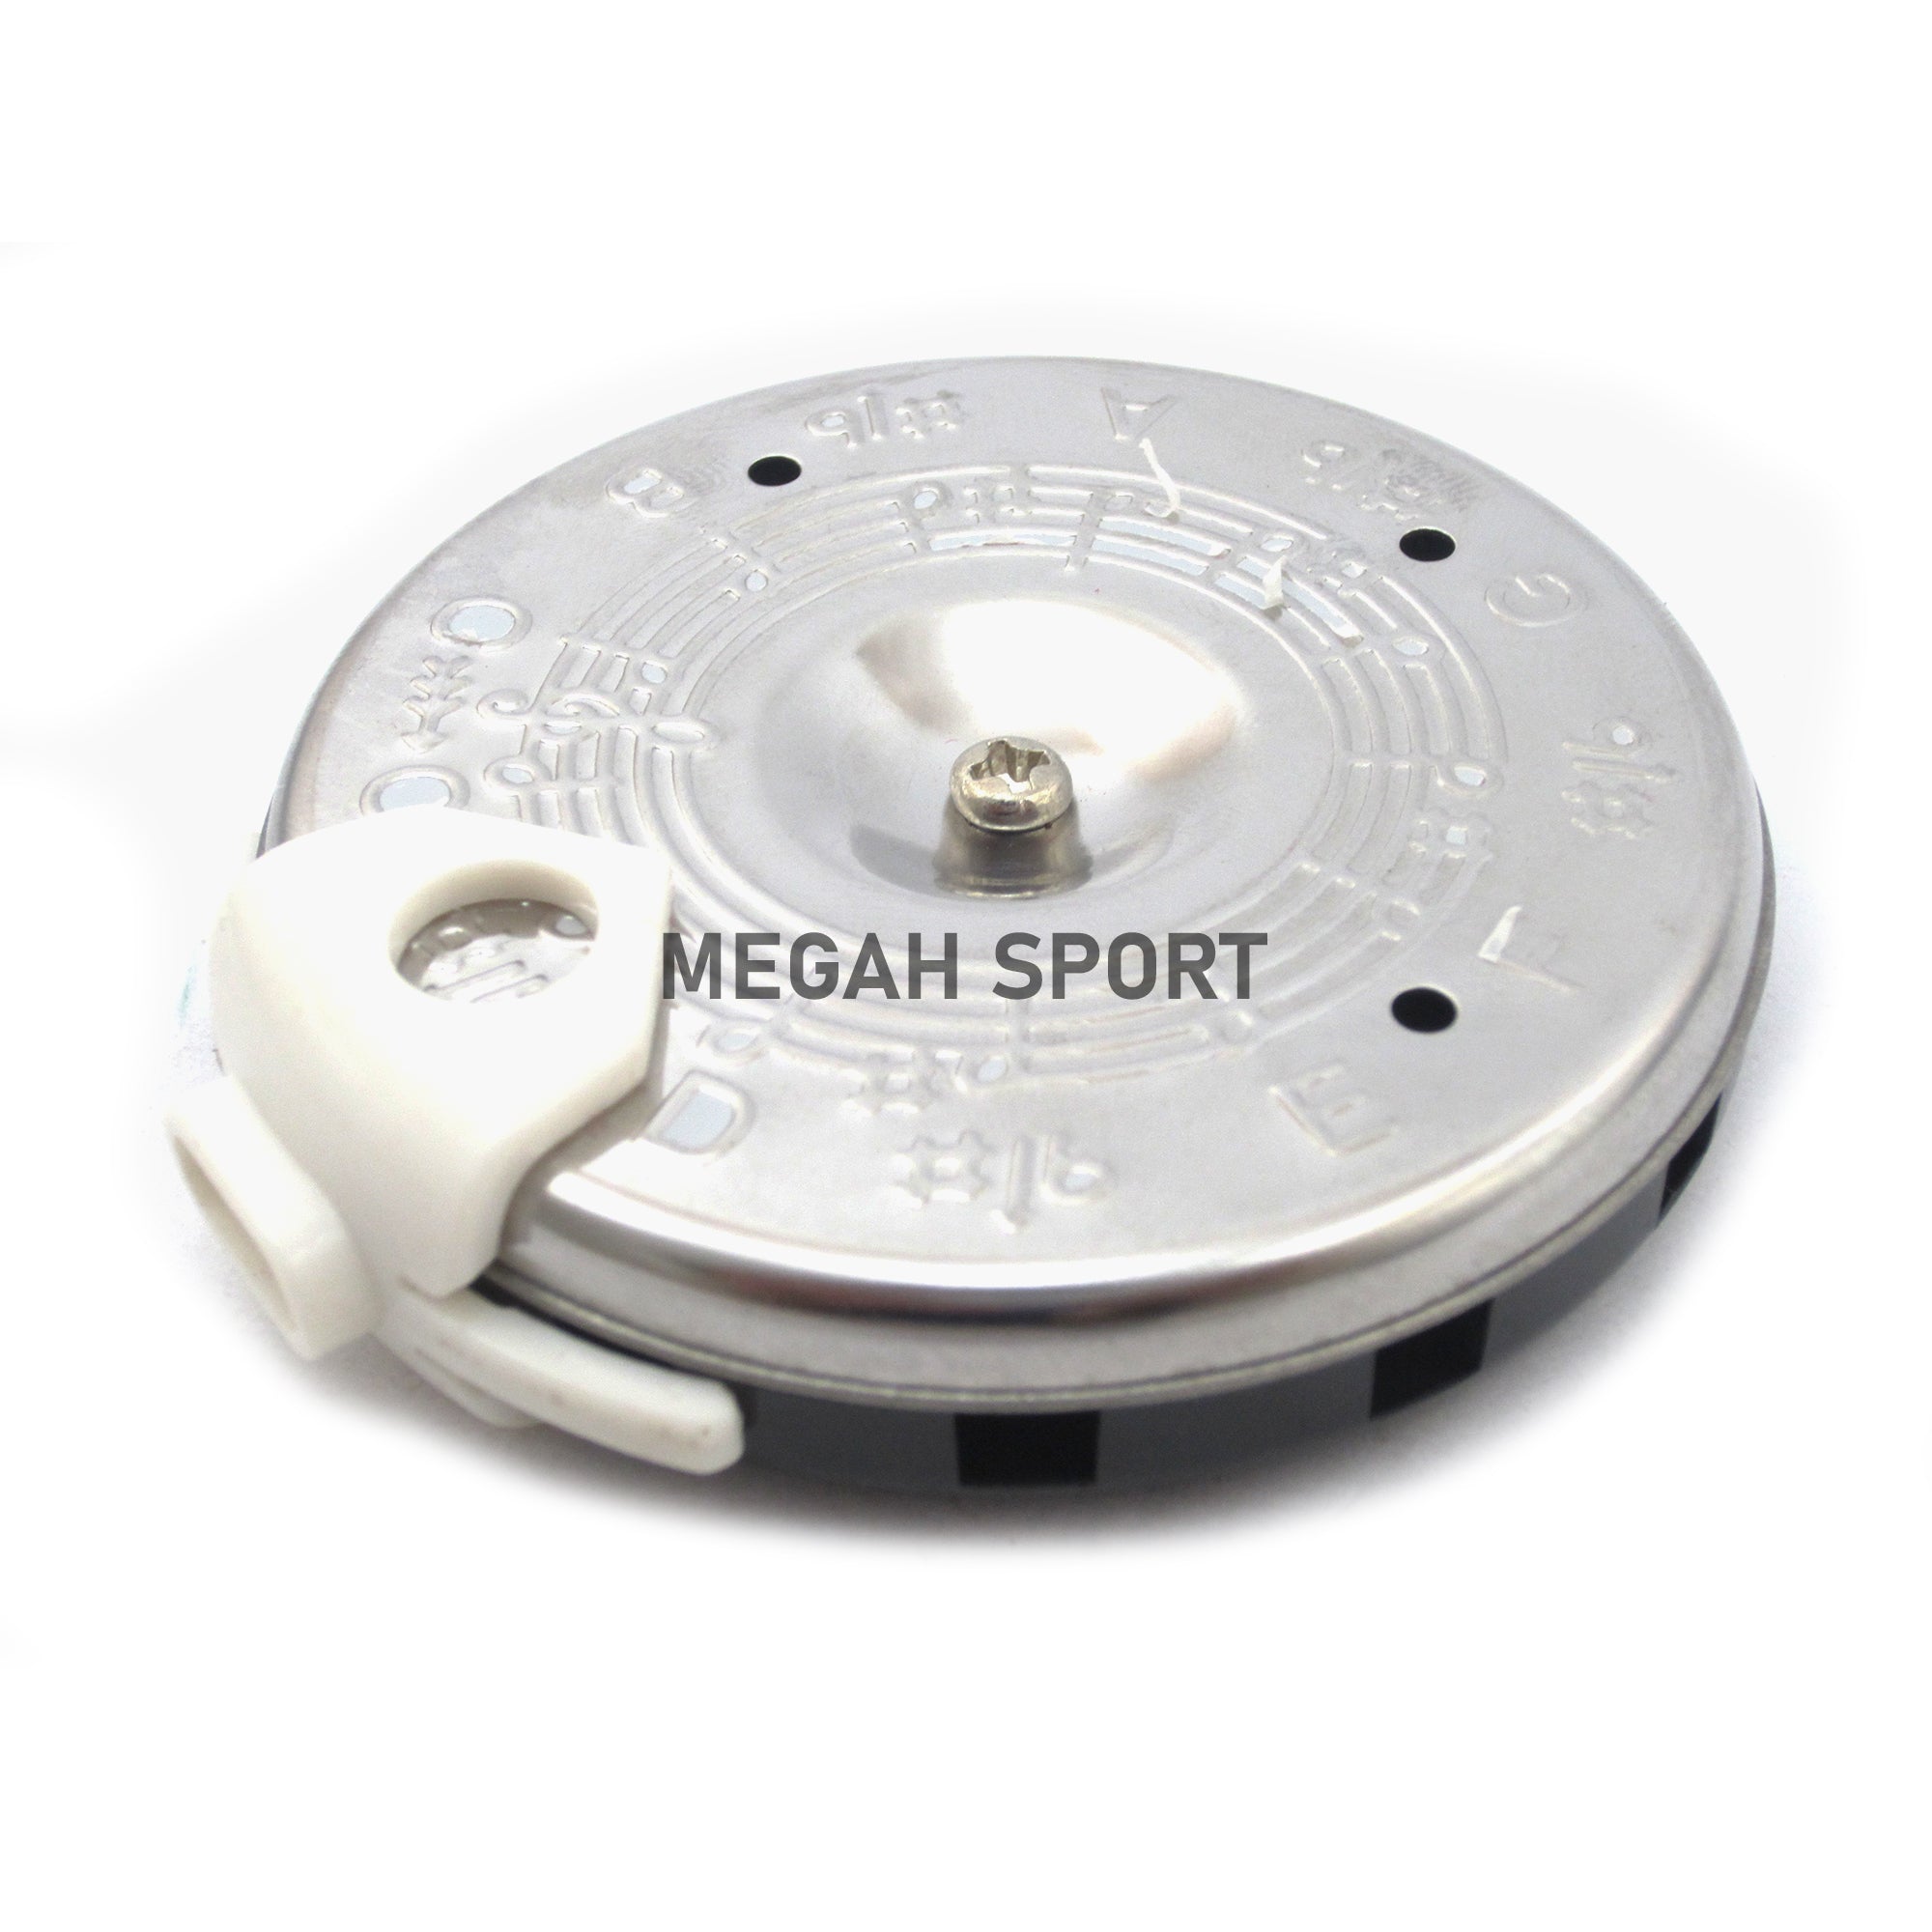 ROTARI PITCH PIPE (AM712) - Megah Sport